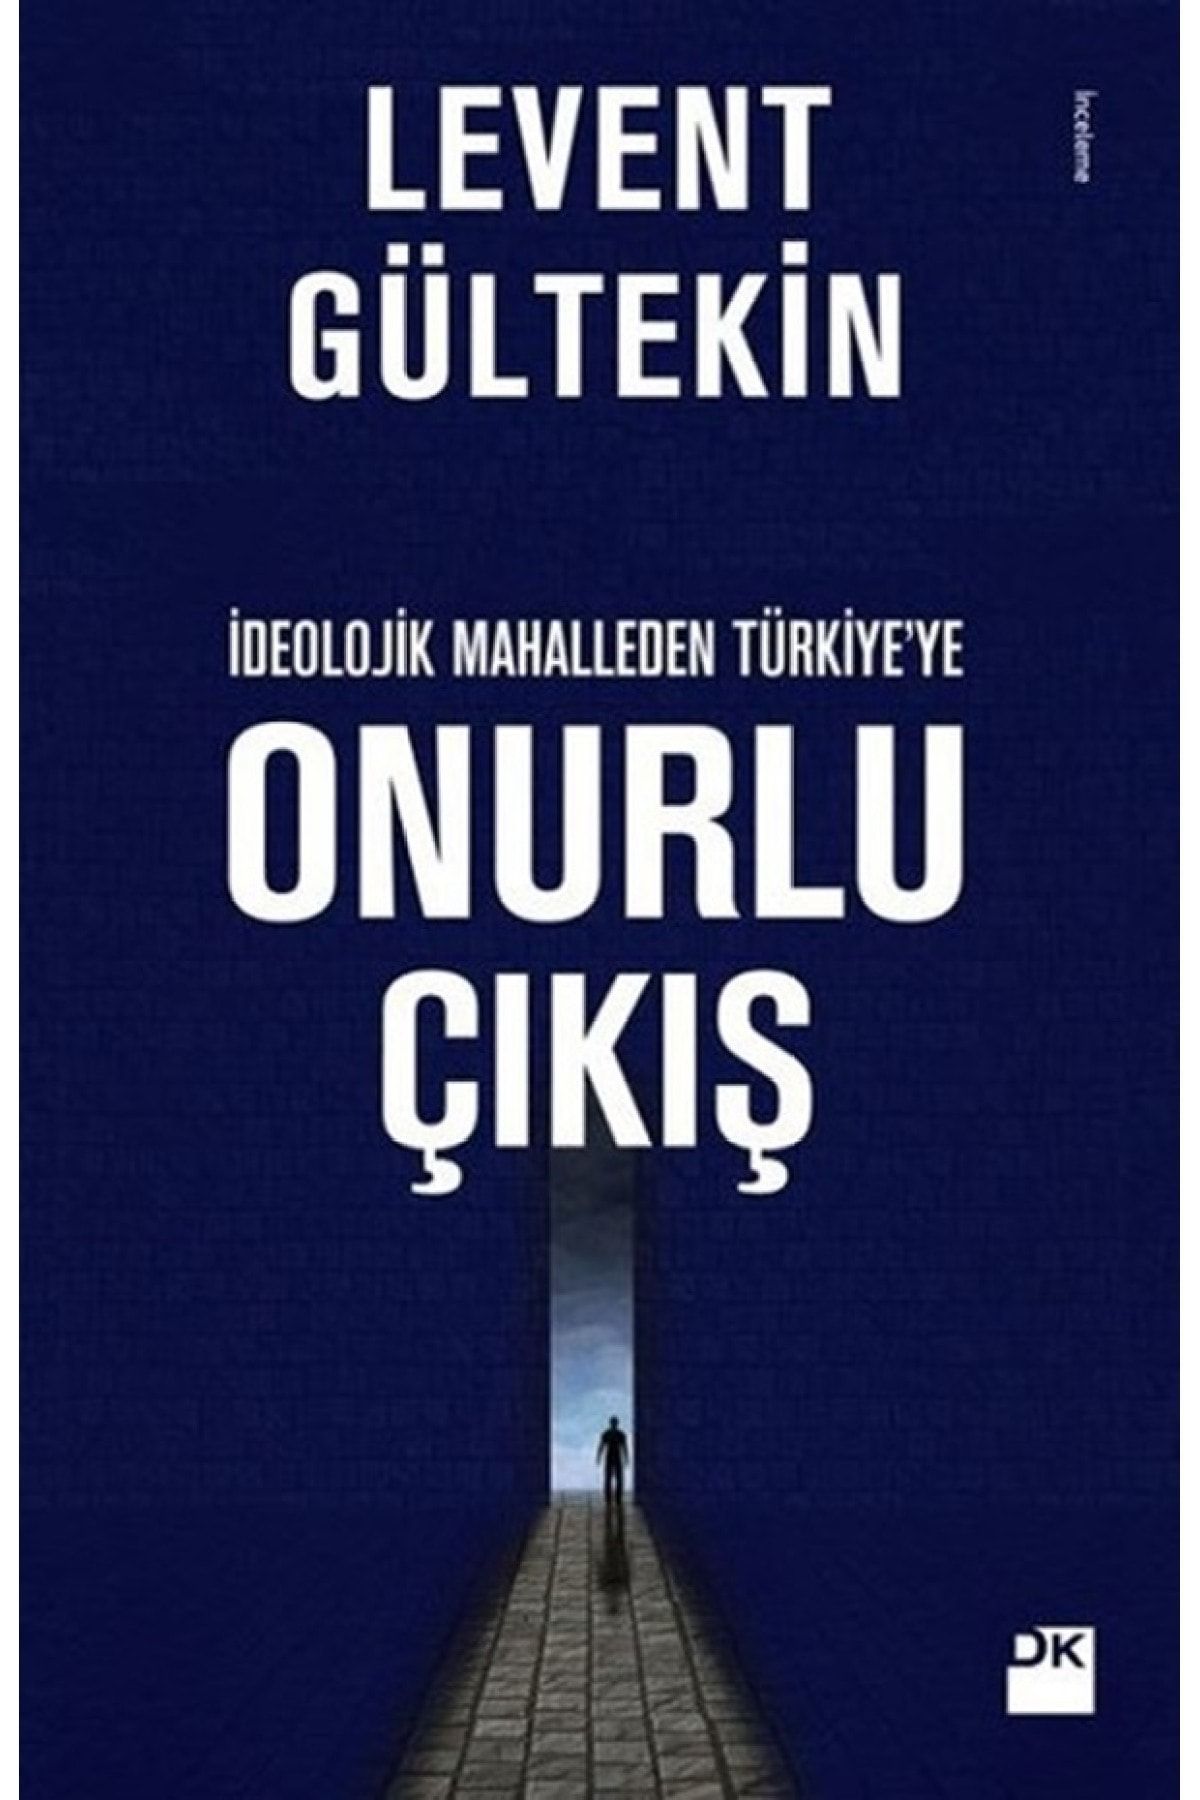 Doğan Kitap Ideolojik Mahalleden Türkiye'ye Onurlu Çıkış / Levent Gültekin / / 9786050947007